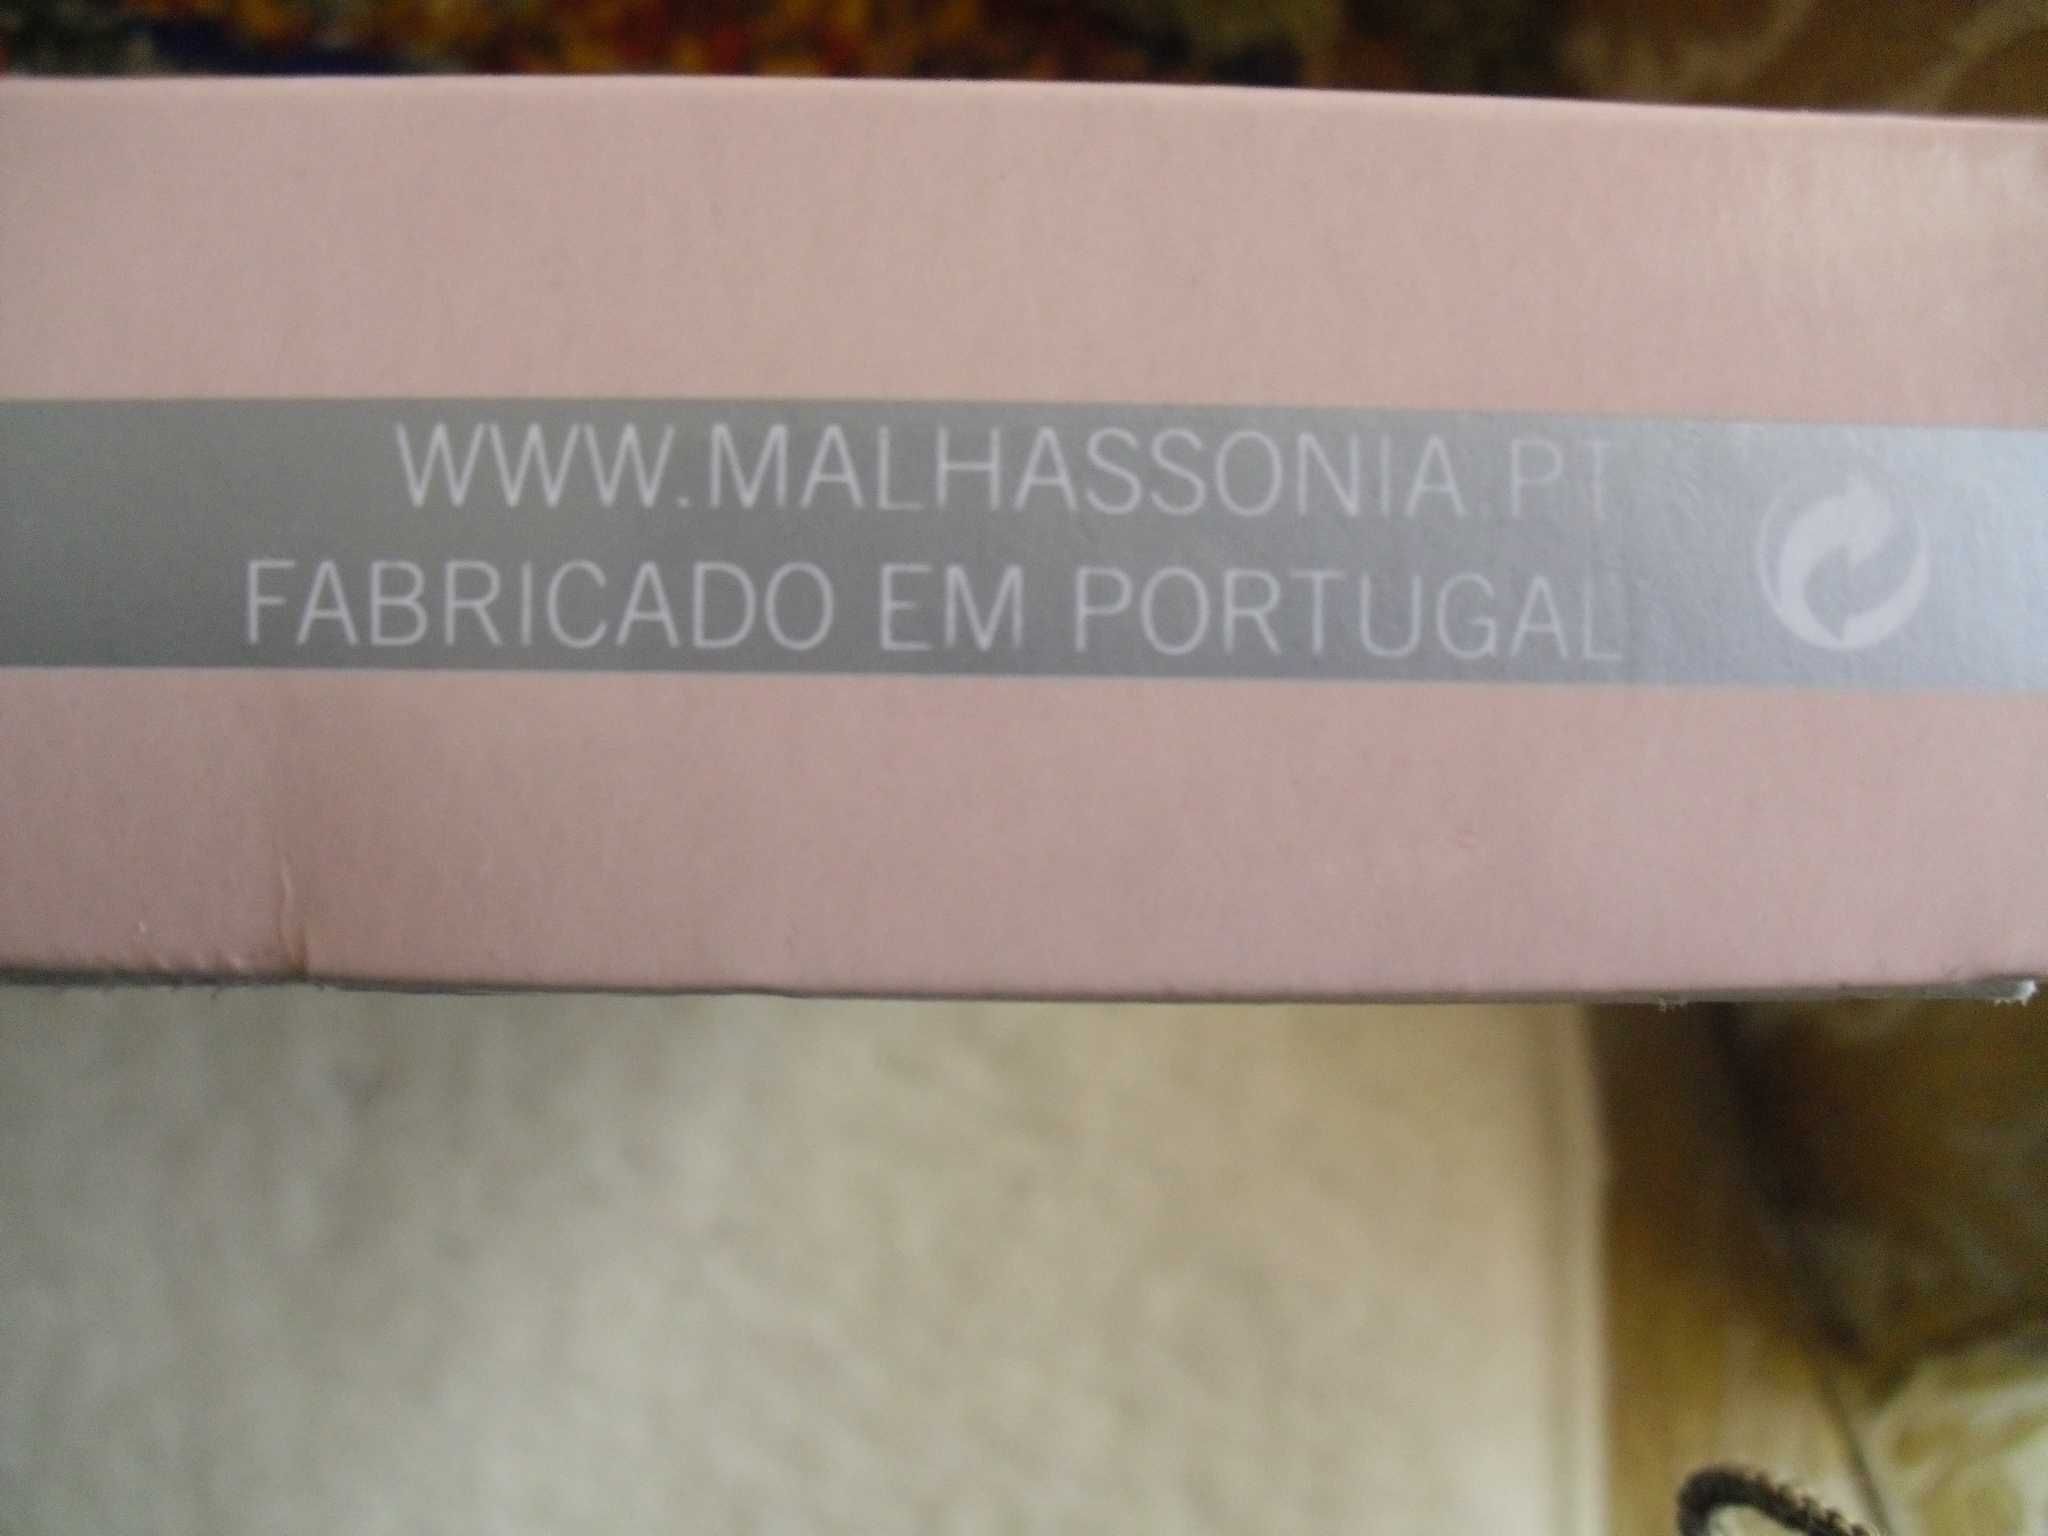 Pijama de senhora Fabricado em Portugal por Malhassonia